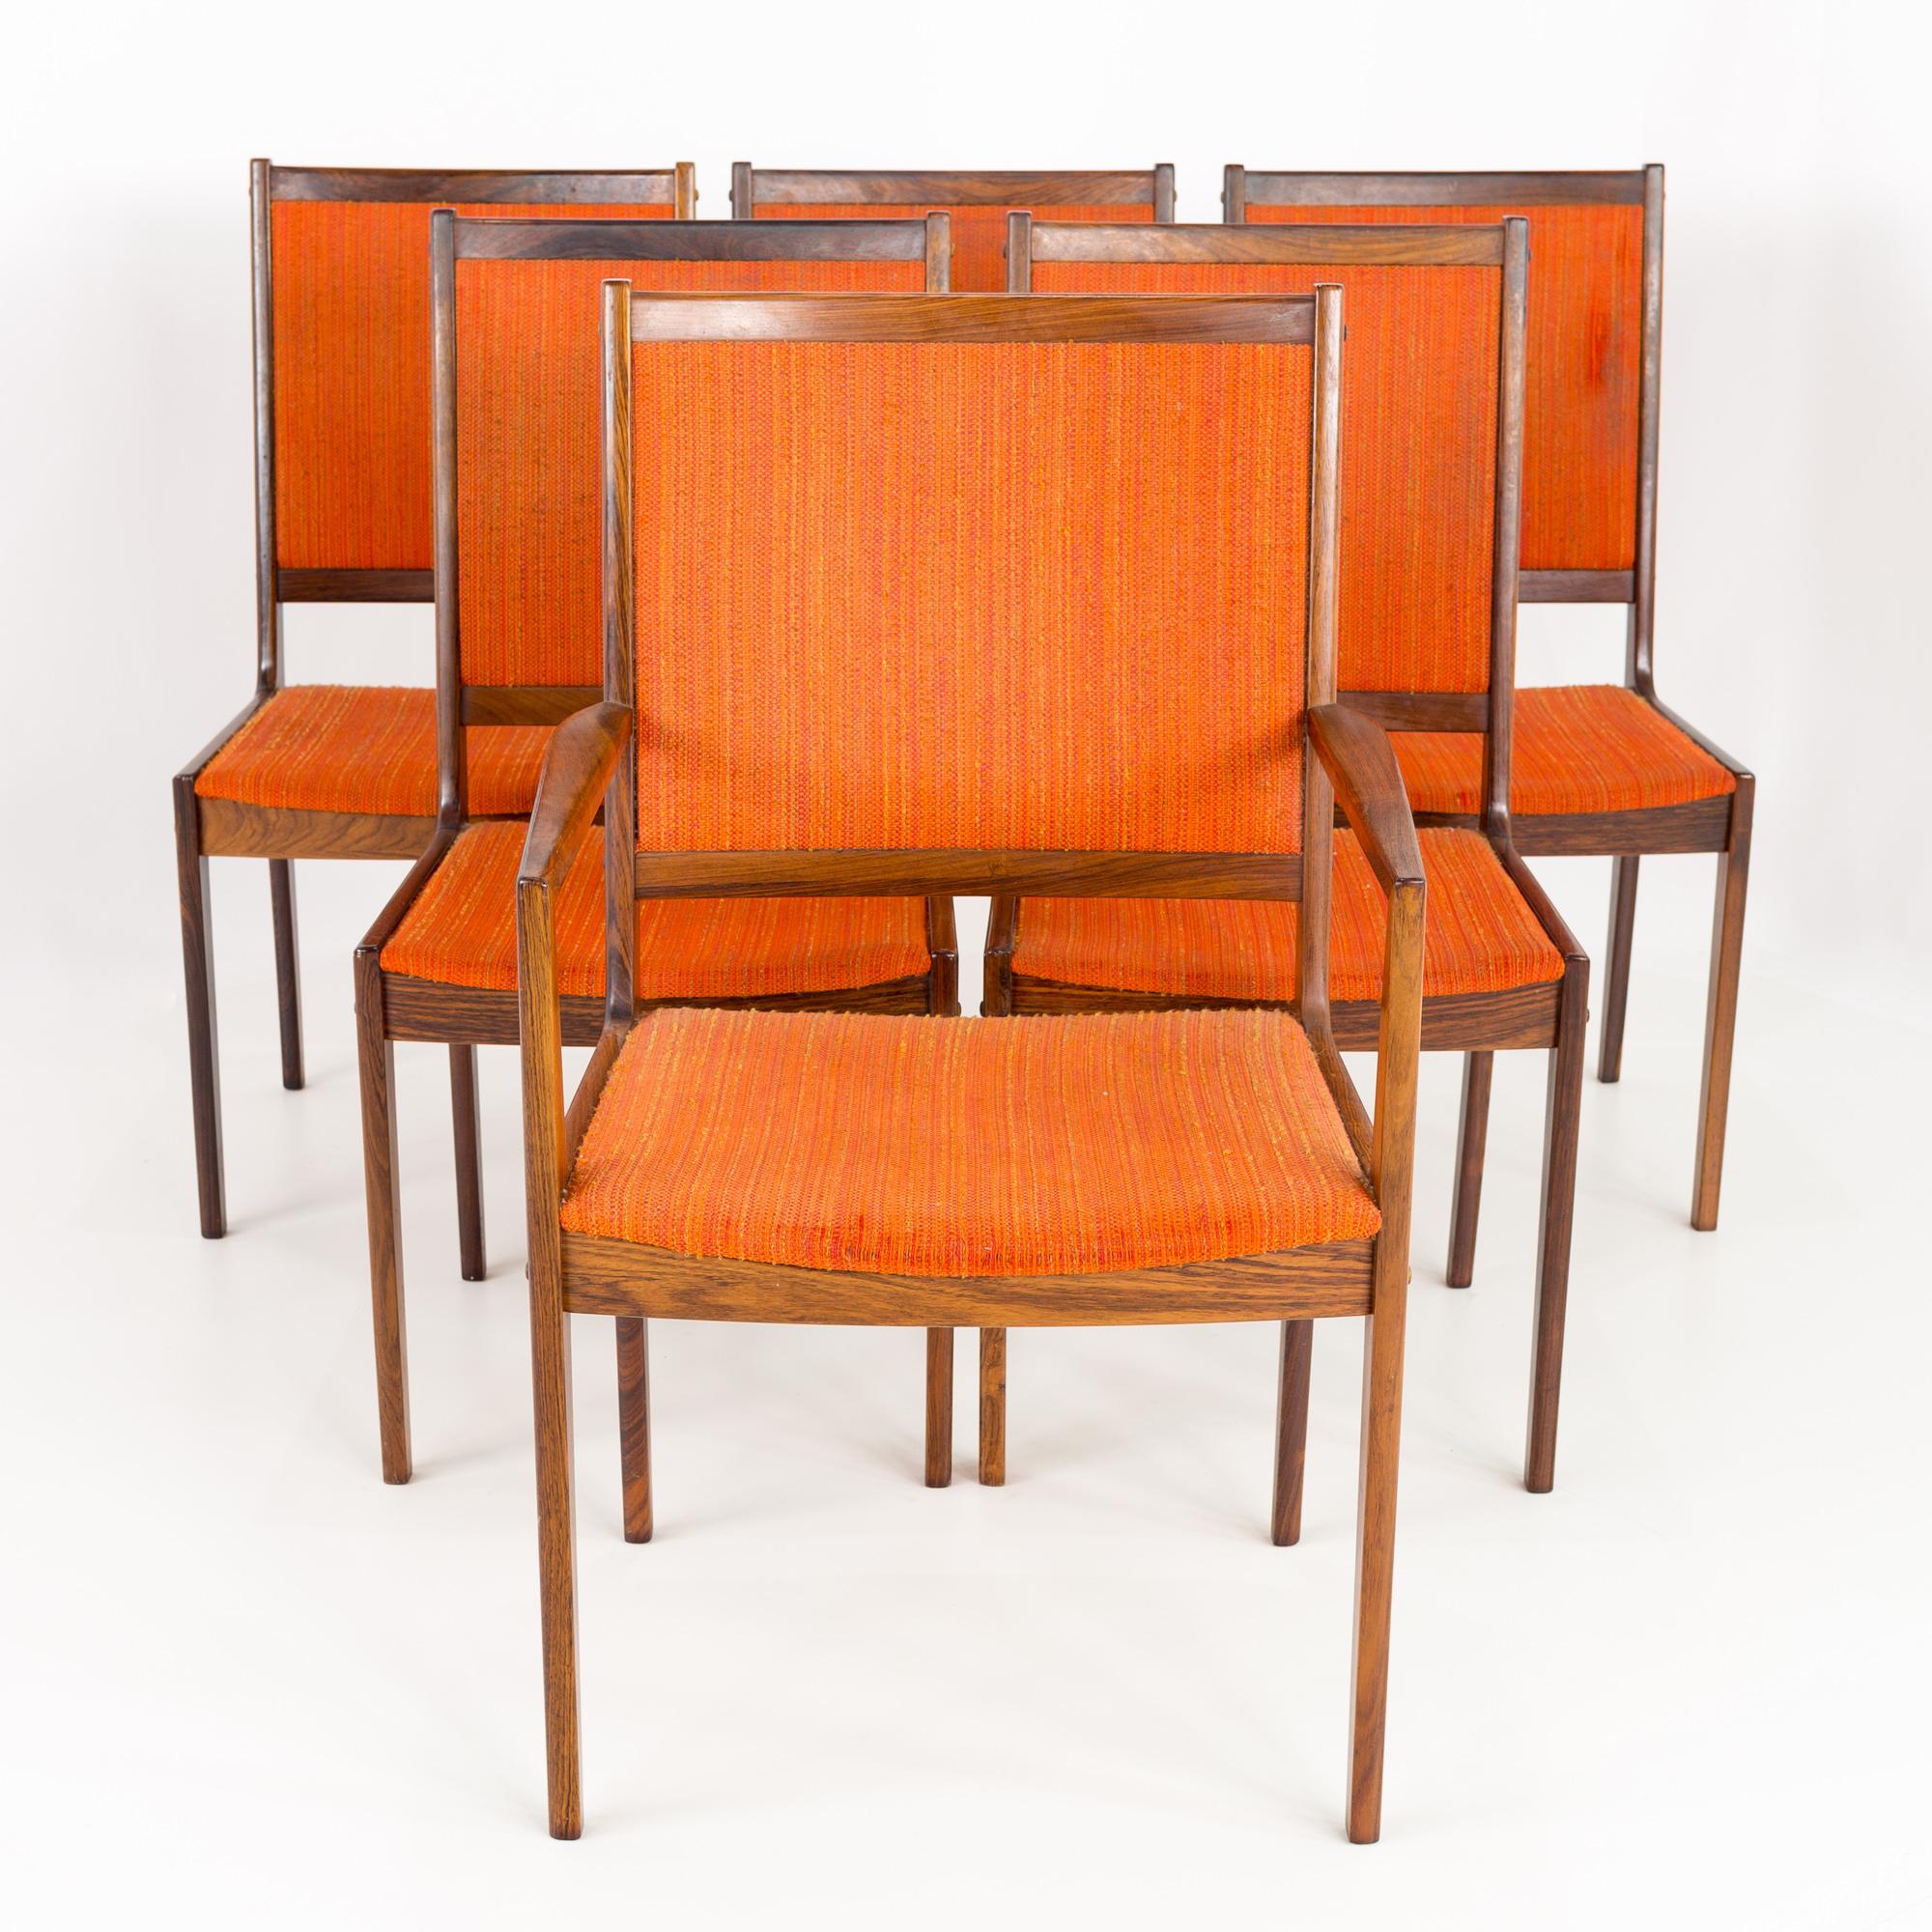 Chaises de salle à manger Kofod Larsen en palissandre du milieu du siècle - jeu de 6.

Chaque chaise mesure : 23.75 de large x 21.75 de profond x 37.5 de haut, avec une hauteur de siège de 17.75 et une hauteur d'accoudoir de 25.75 pouces.

Tous